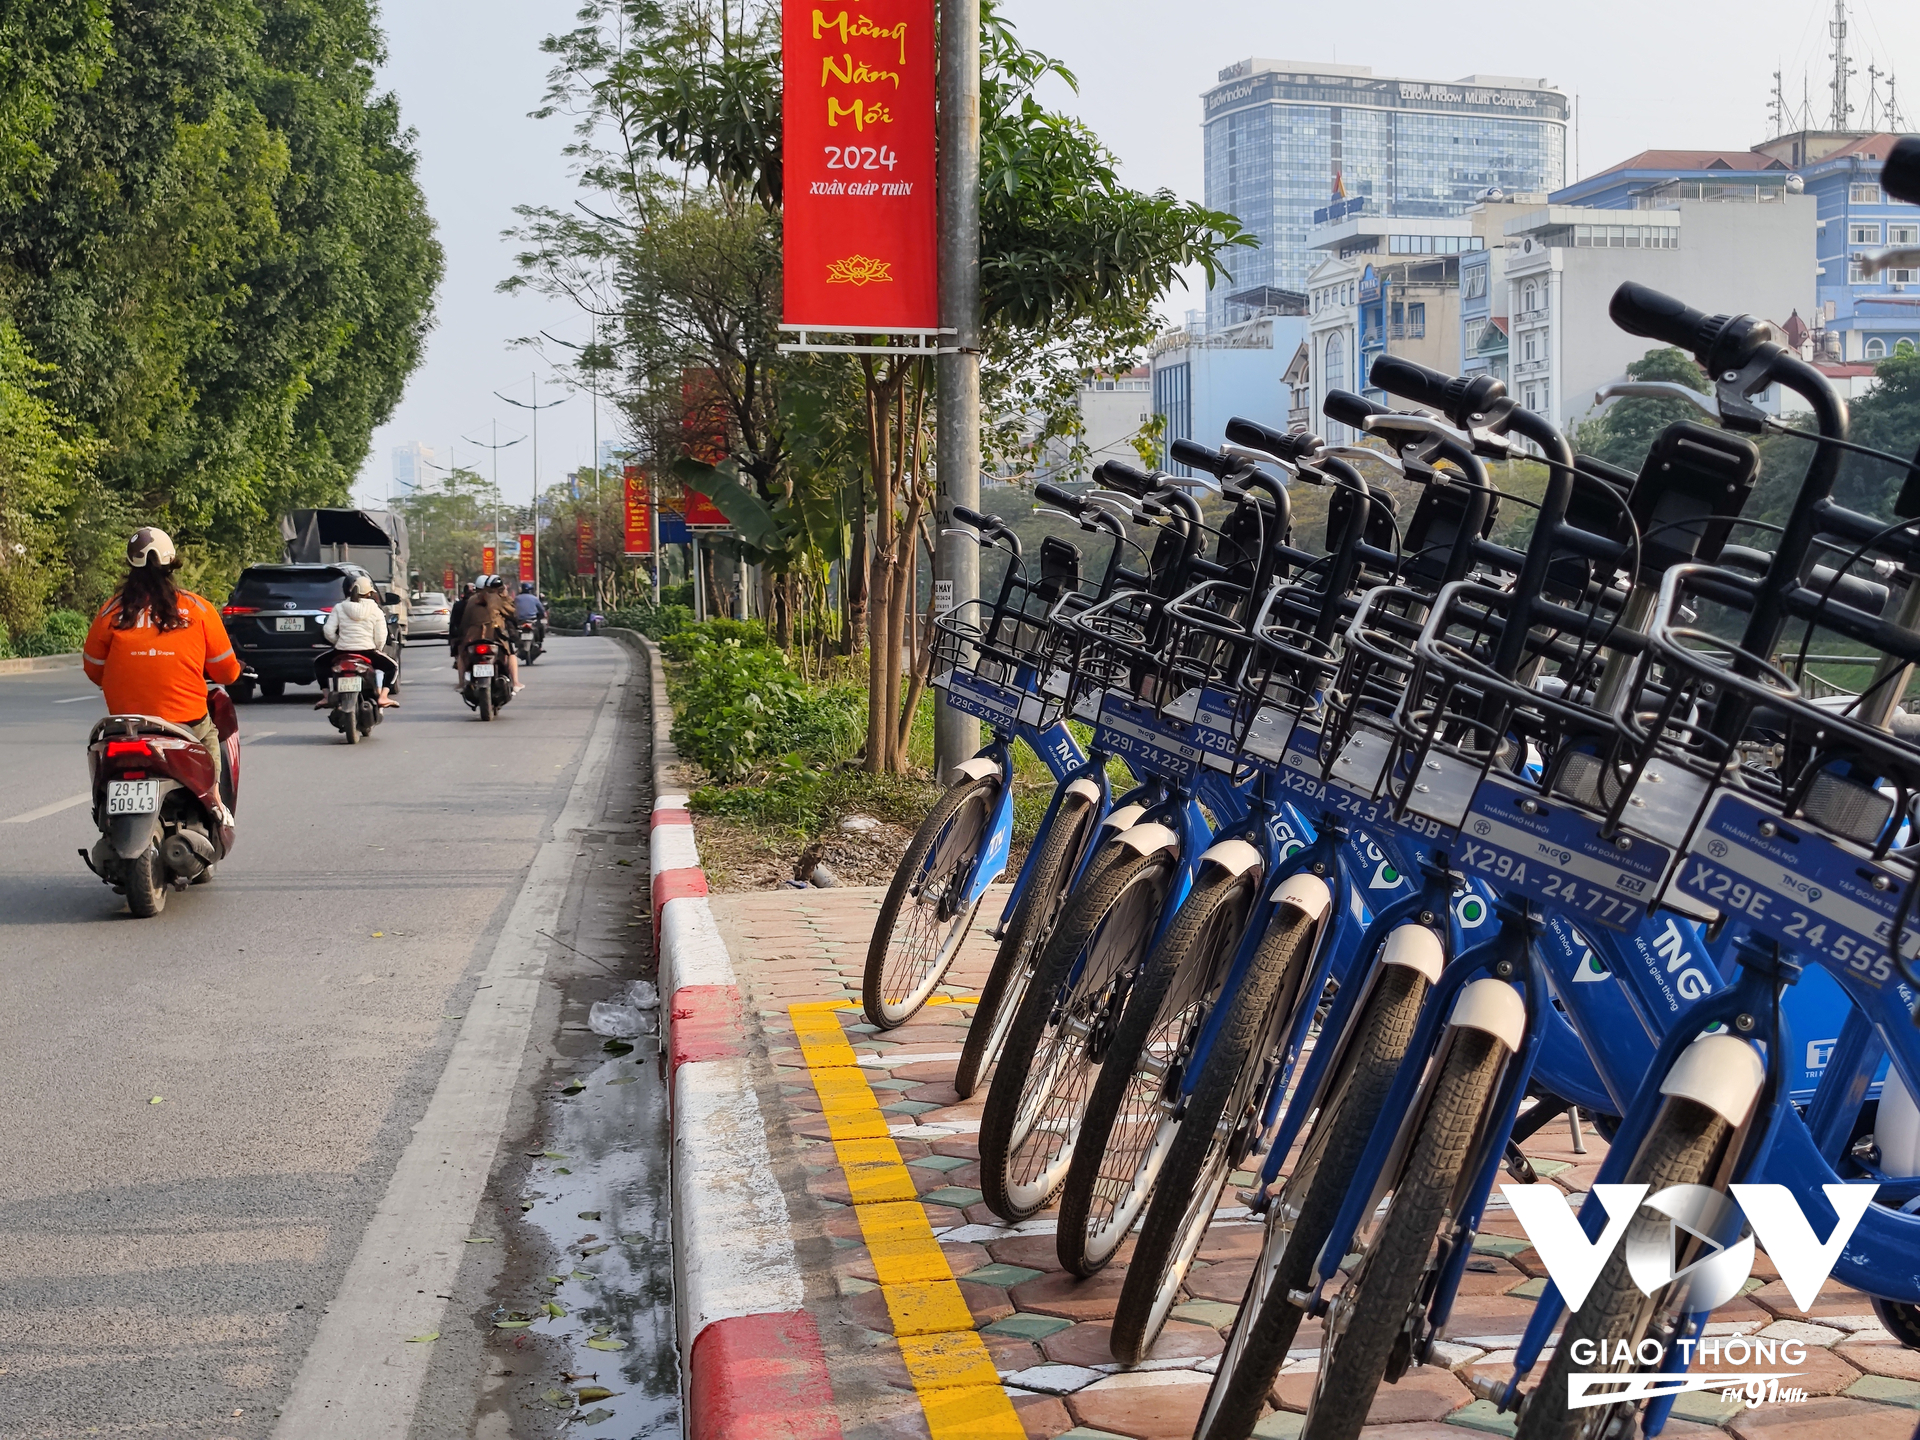 Trạm xe đạp công cộng được bố trí trên tuyến đường khá hợp lý, phù hợp cho người dân muốn đến trải nghiệm